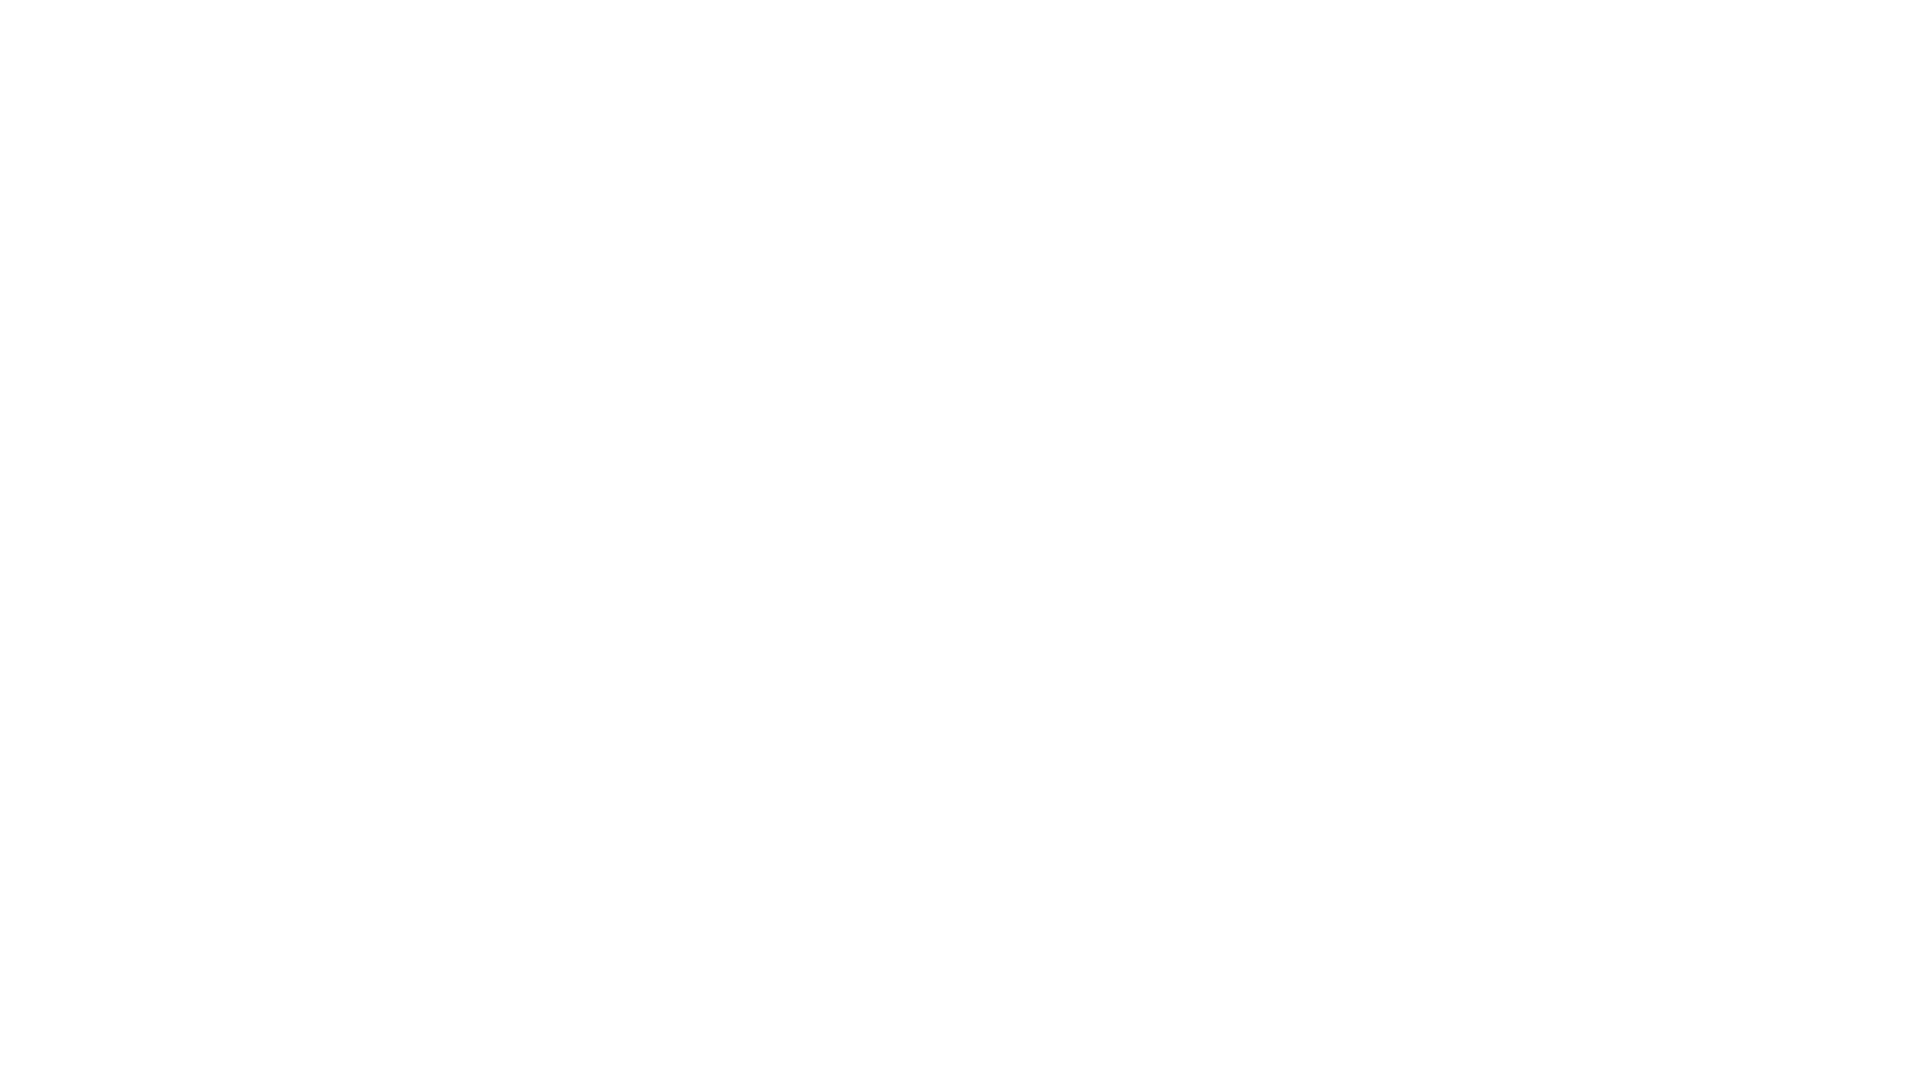 Tracksmith logo